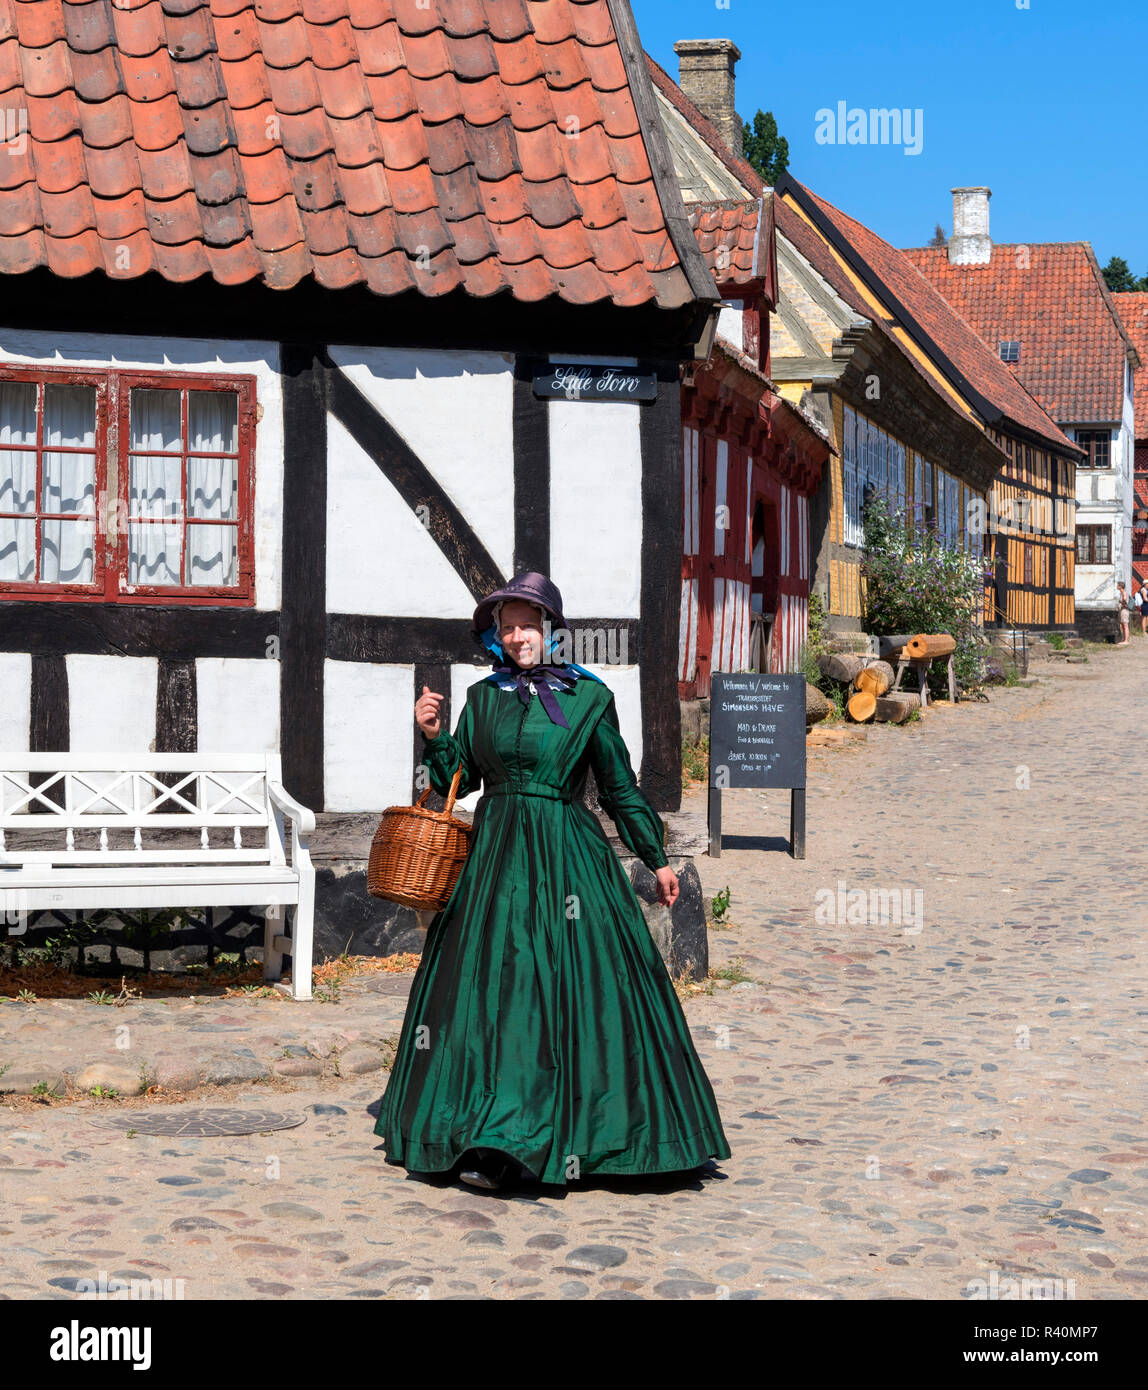 Mujer vestida con trajes de época en el casco antiguo de la ciudad (Den Gamle By), un museo al aire libre en Aarhus, Dinamarca Foto de stock